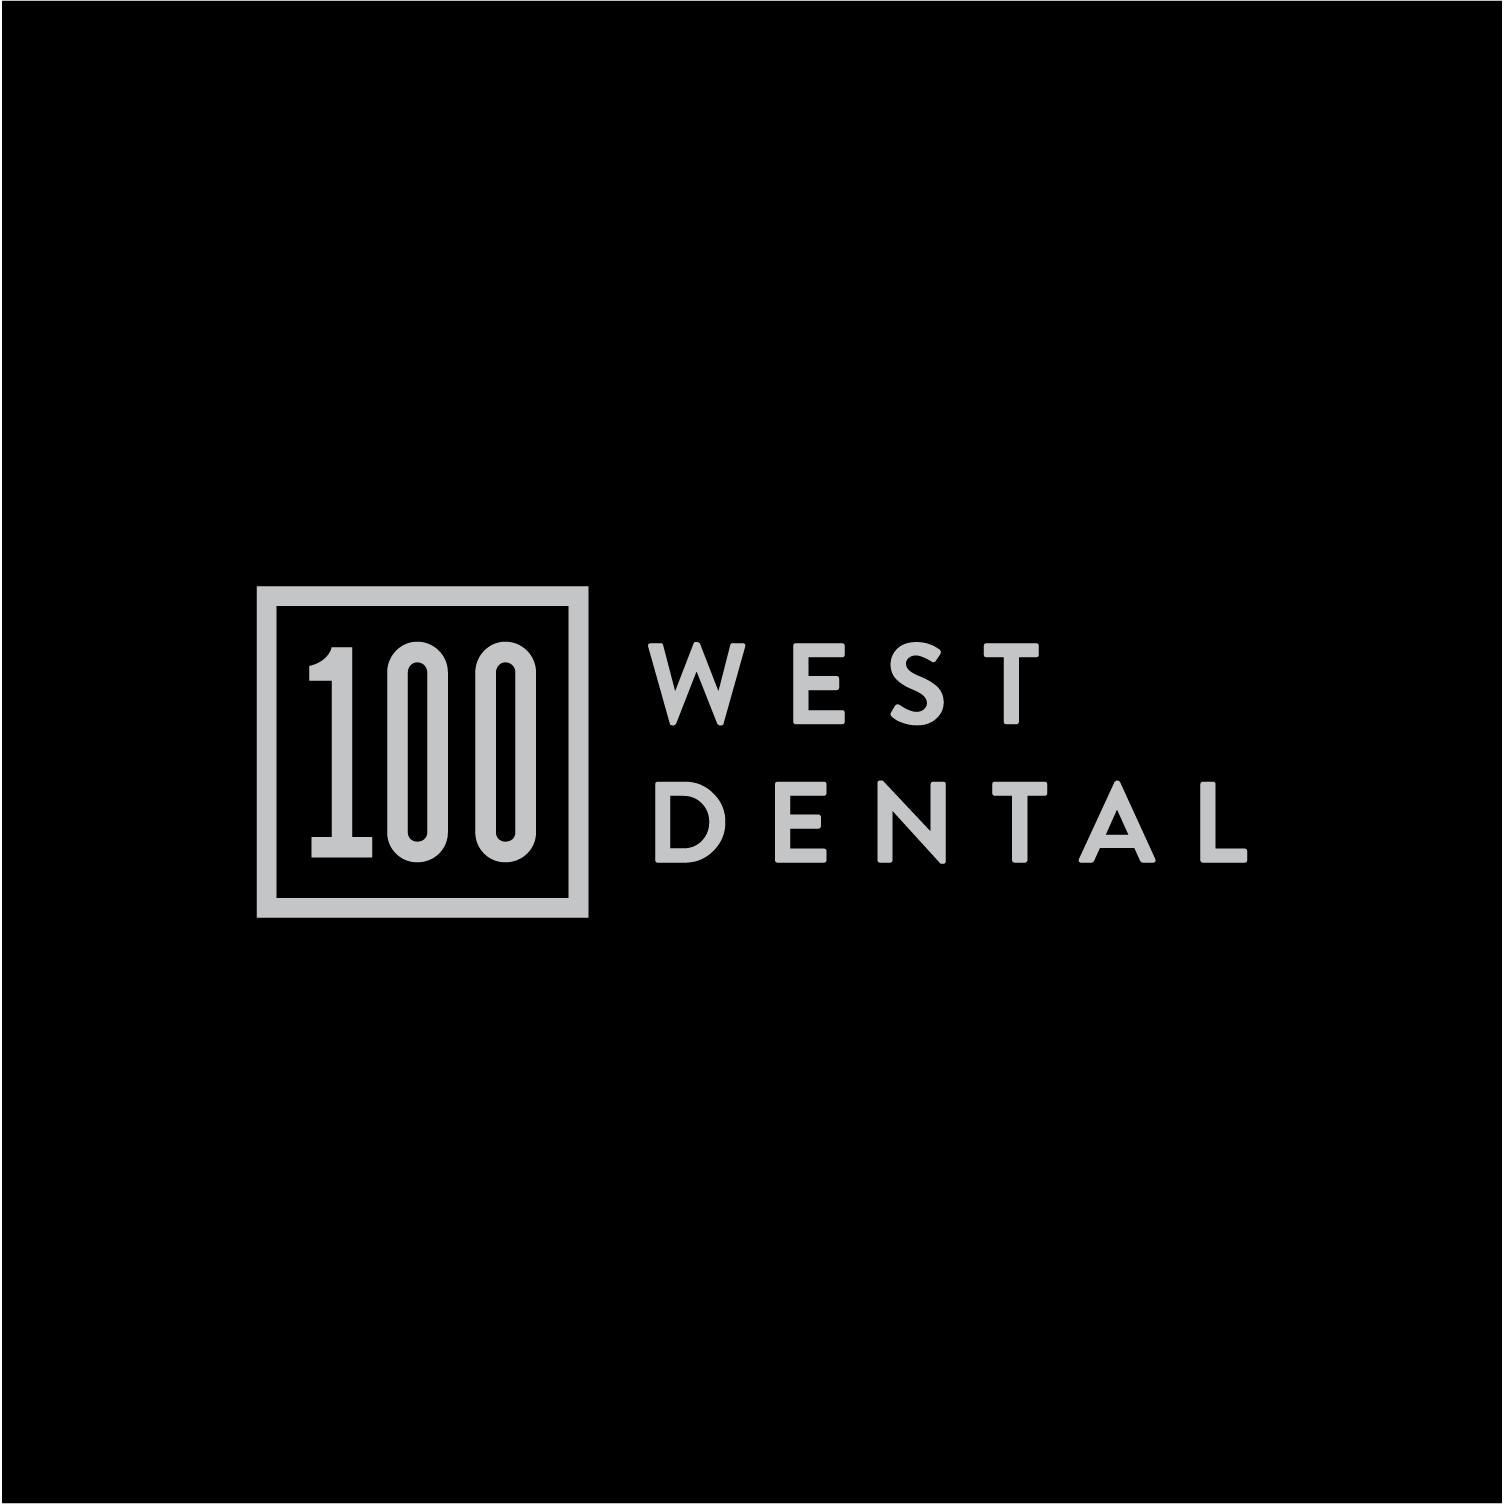 100 West Dental - Ballwin, MO 63011 - (636)585-0100 | ShowMeLocal.com